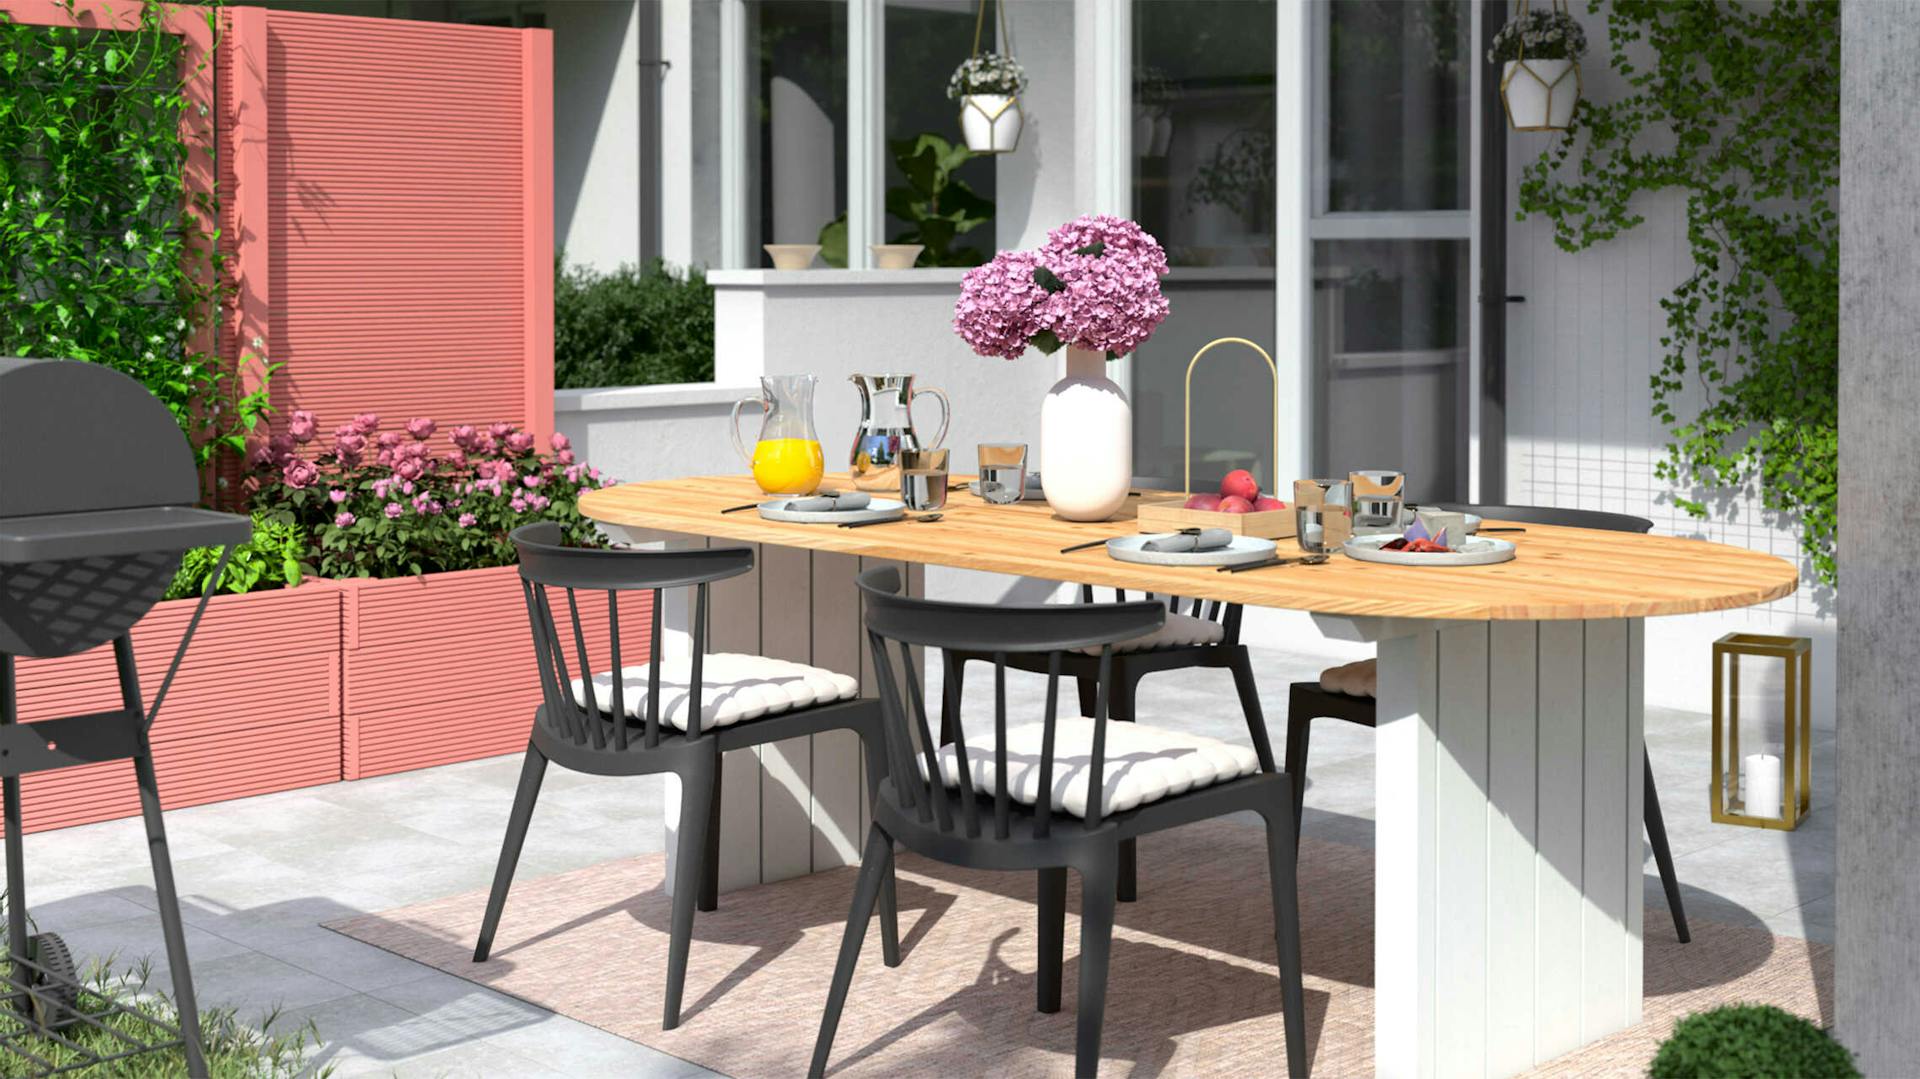 Gartentisch Emilia steht auf einer hellen Terrasse, wo das Hochbeet Alfred in einem pastellrot als Sichschutz aufgestellt worden ist.